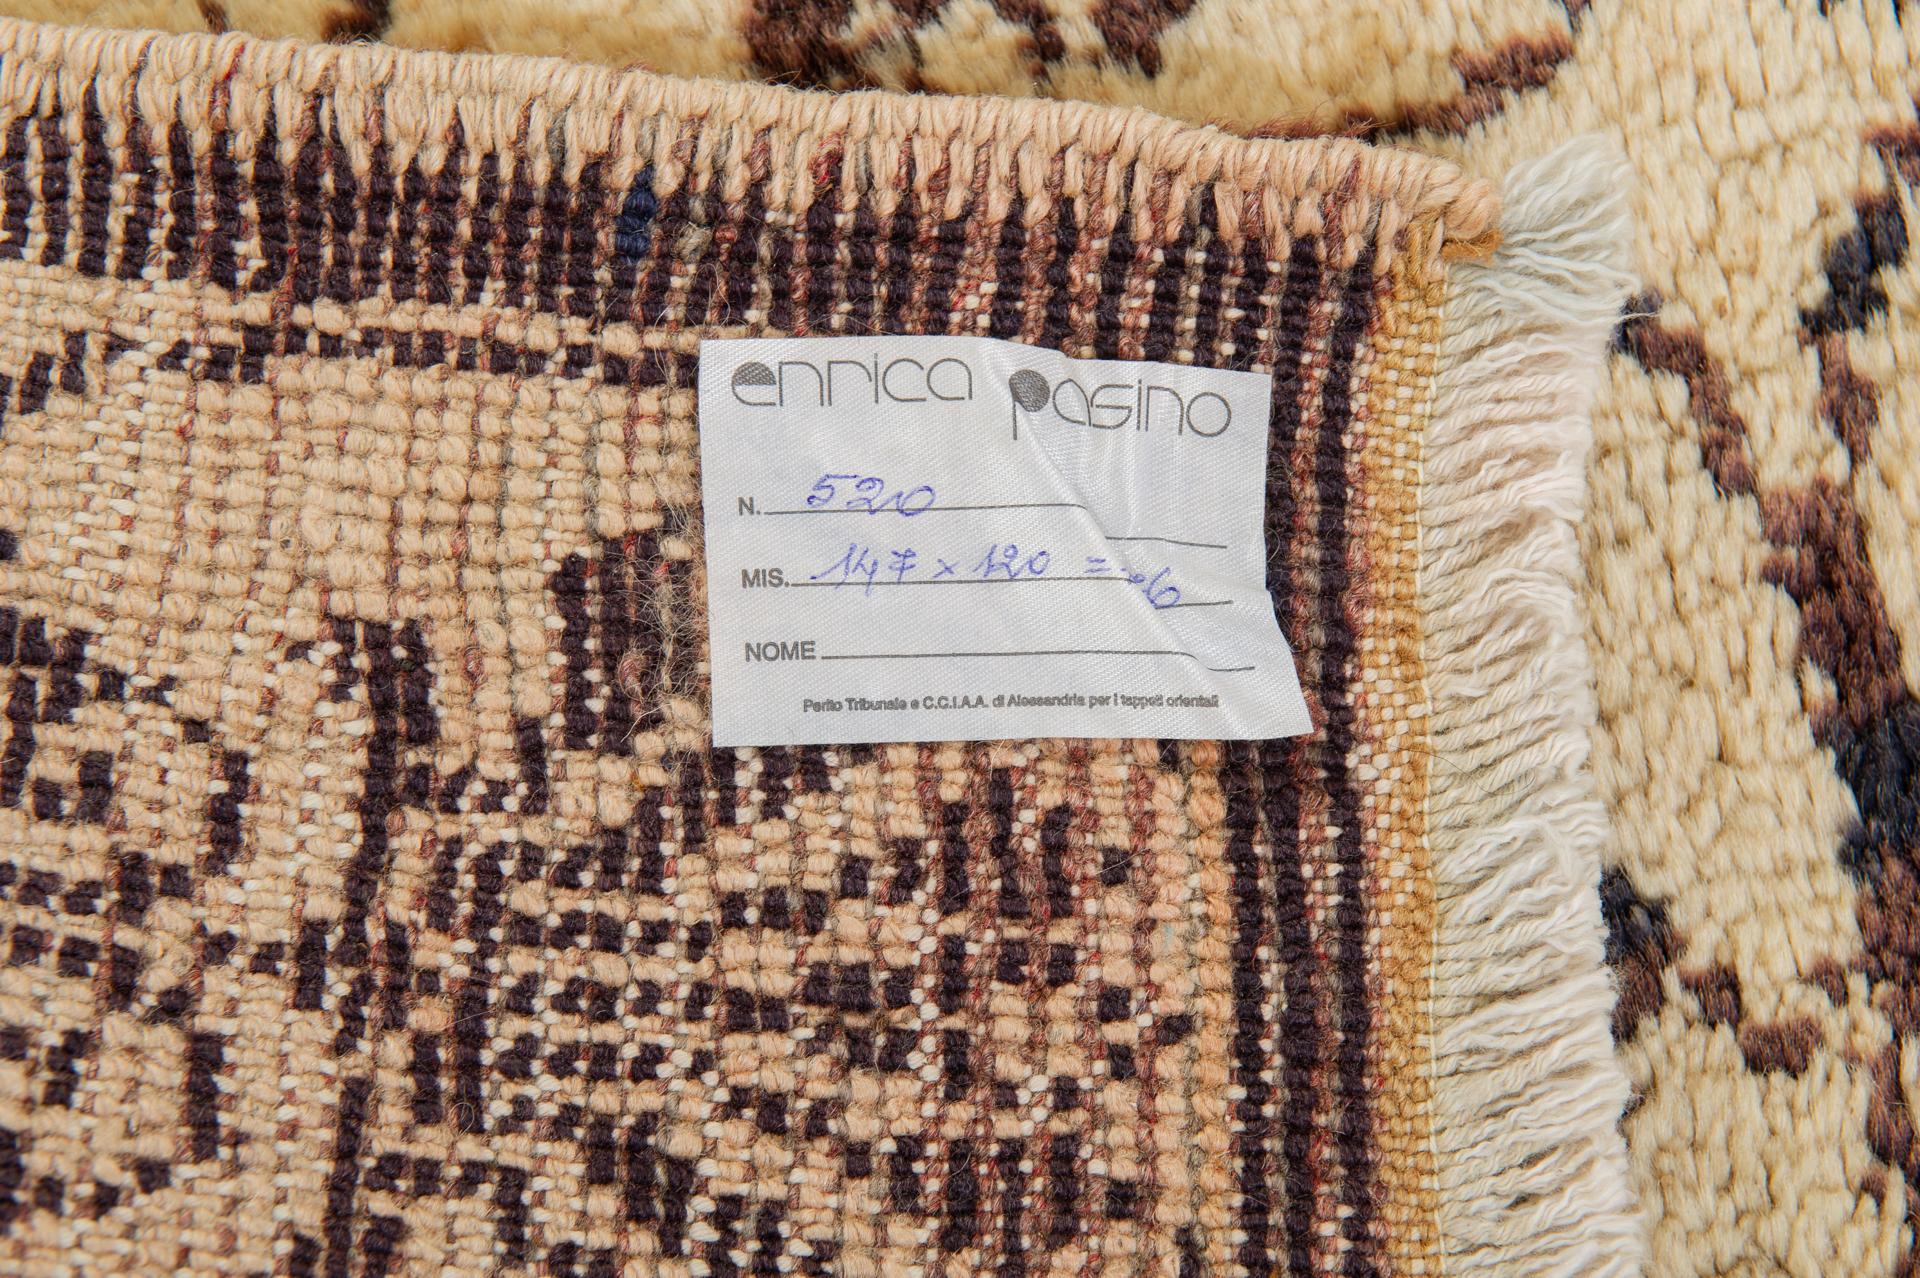 nr. 764 -  Türkischer TULU-Teppich  mit elegantem Guilloché-Muster in Indigo auf elfenbeinfarbenem Hintergrund aus flauschiger Wolle.
Es ist ein robuster Teppich, aber mit einem freundlichen Aussehen! Jetzt mit einem guten Preis, weil ich meine